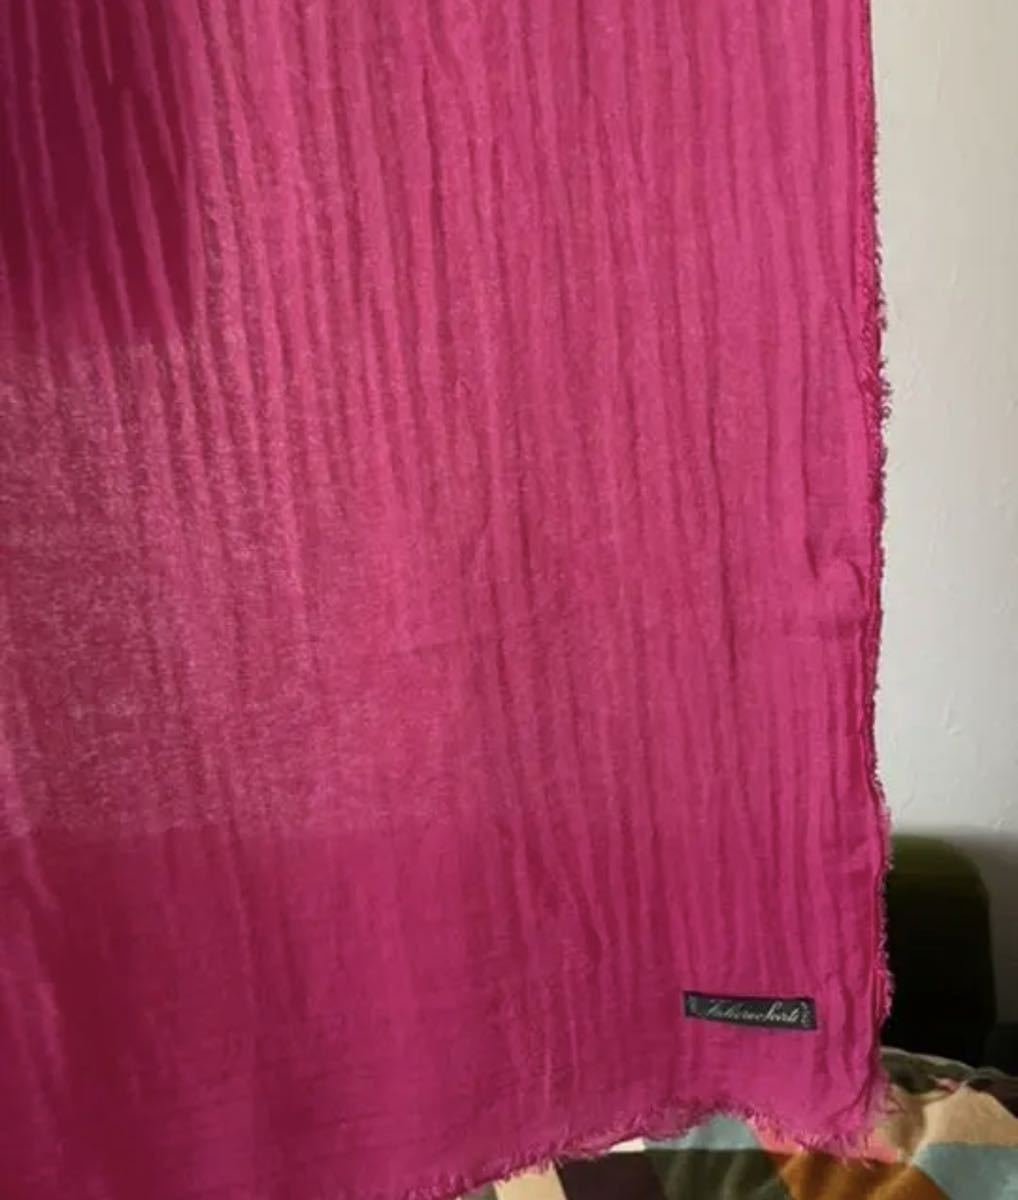 【史上最も激安】 Falierosarti ファリエロサルティ ピンク モダールカシミヤ混紡 イタリア製 大判ストール おしゃれな大人服